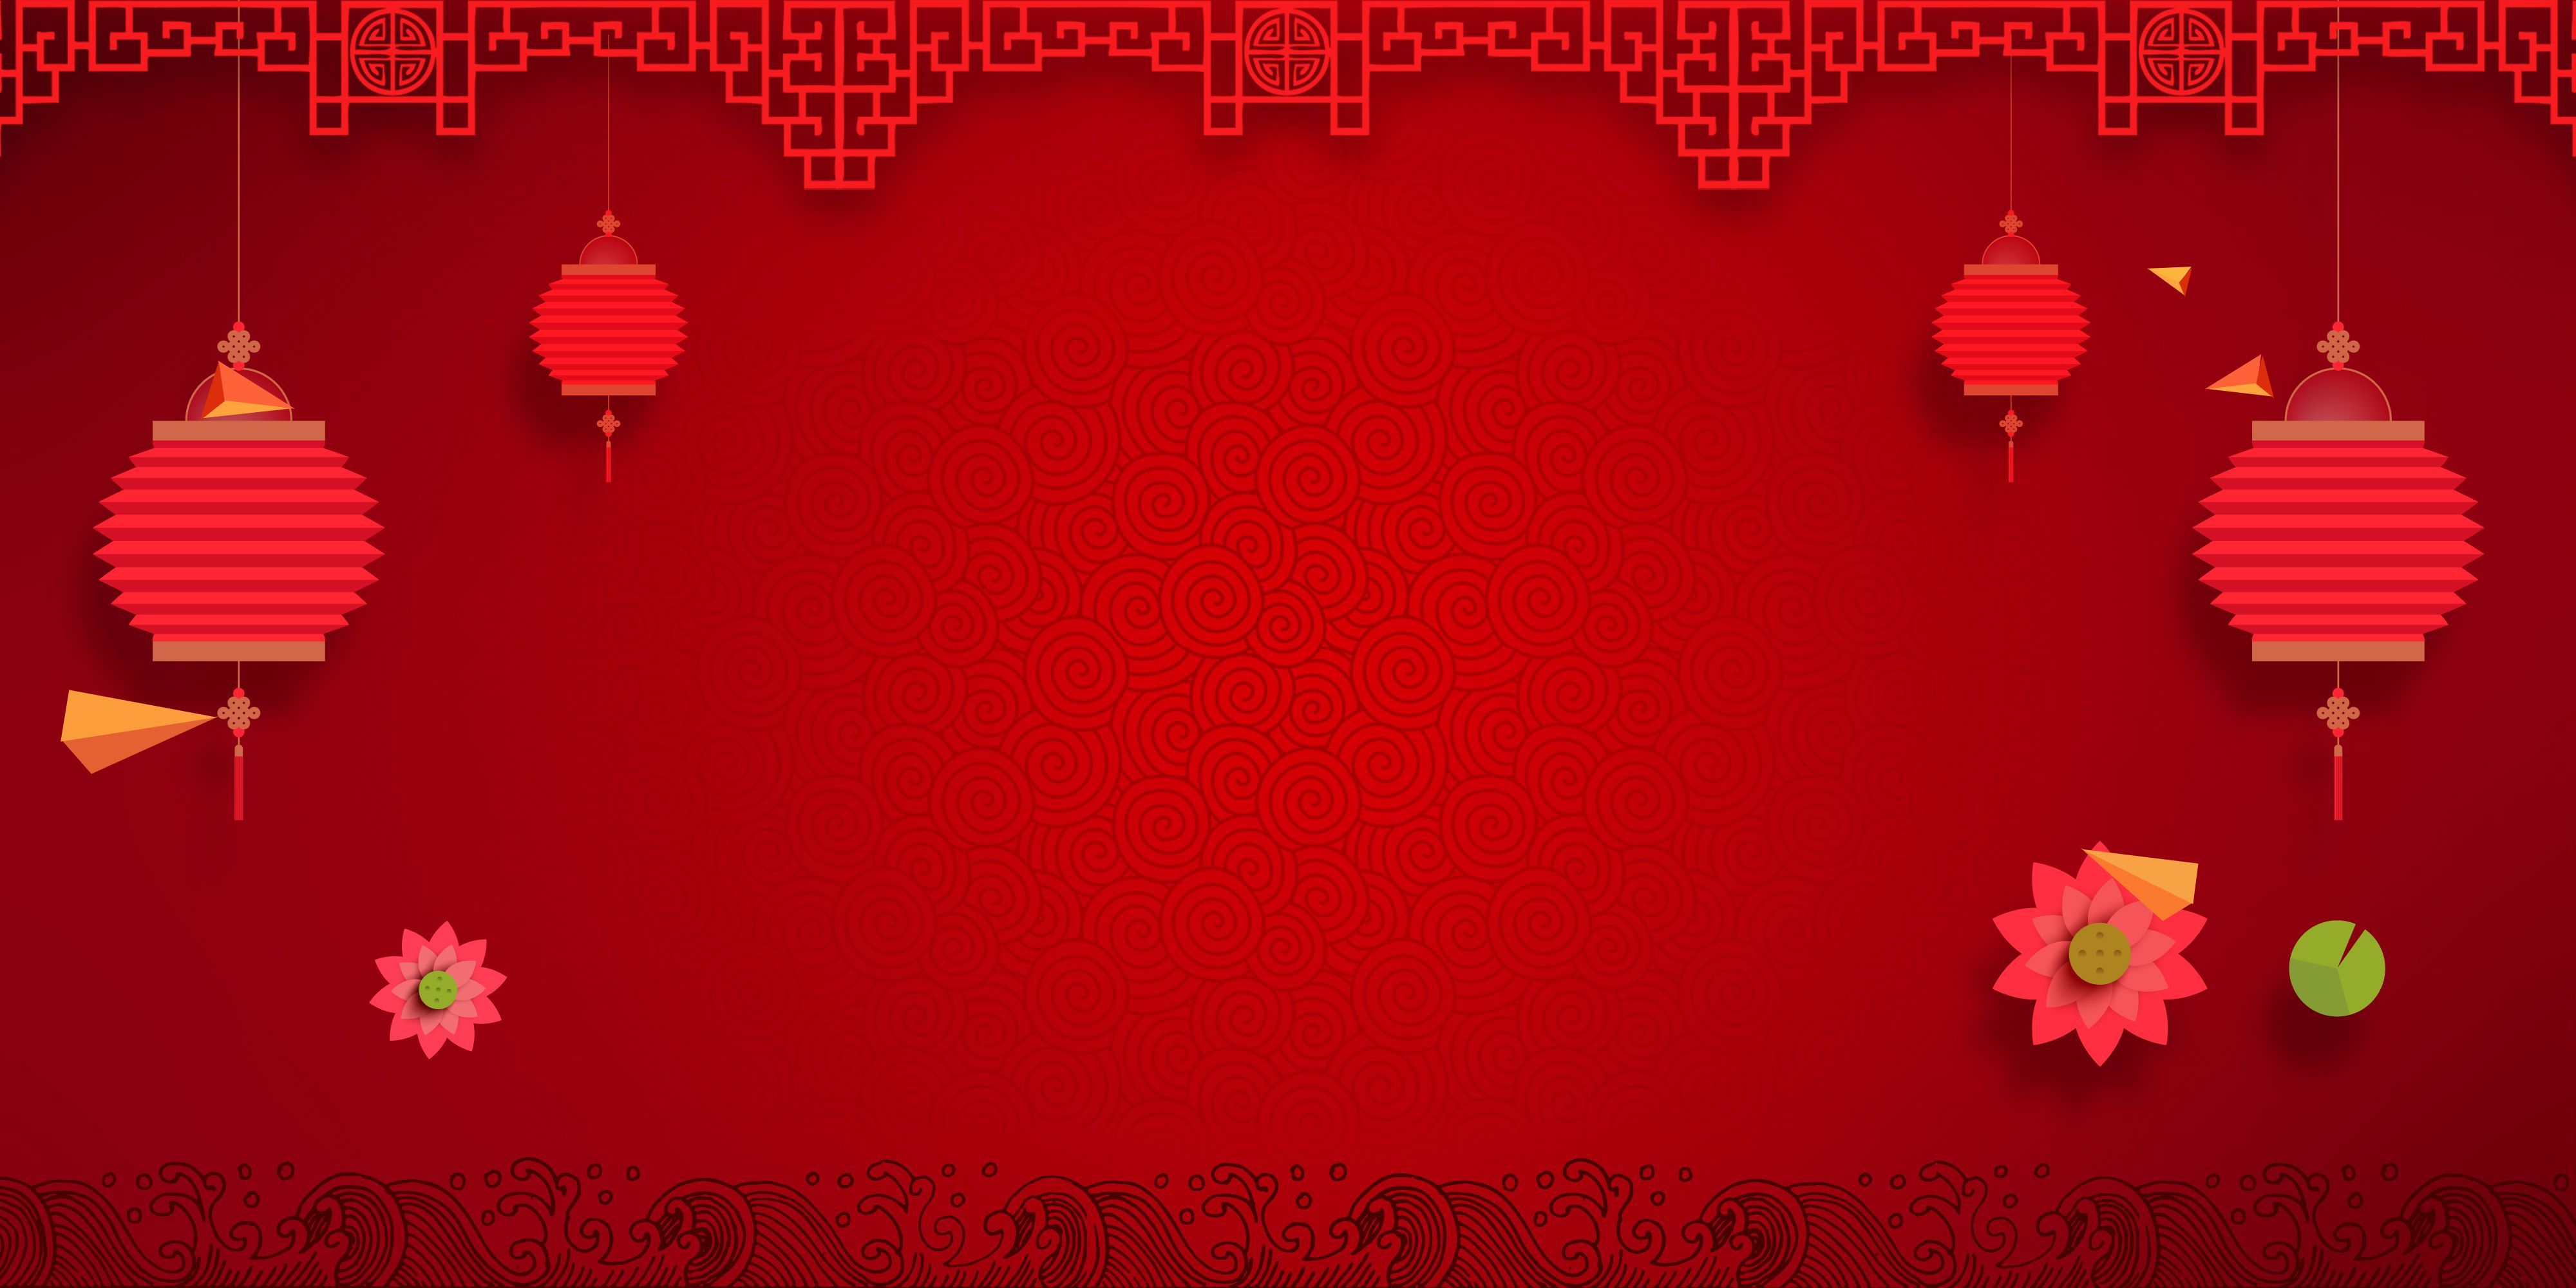 Background đỏ tết: Sắm ngay cho mình những hình nền hoàn toàn đỏ rực rỡ để thể hiện niềm yêu thương và may mắn trong mùa Tết đang đến. Bạn sẽ được tự do lựa chọn hình nền yêu thích và tạo không gian Tết ấm cúng, đón chào năm mới đầy tài lộc.